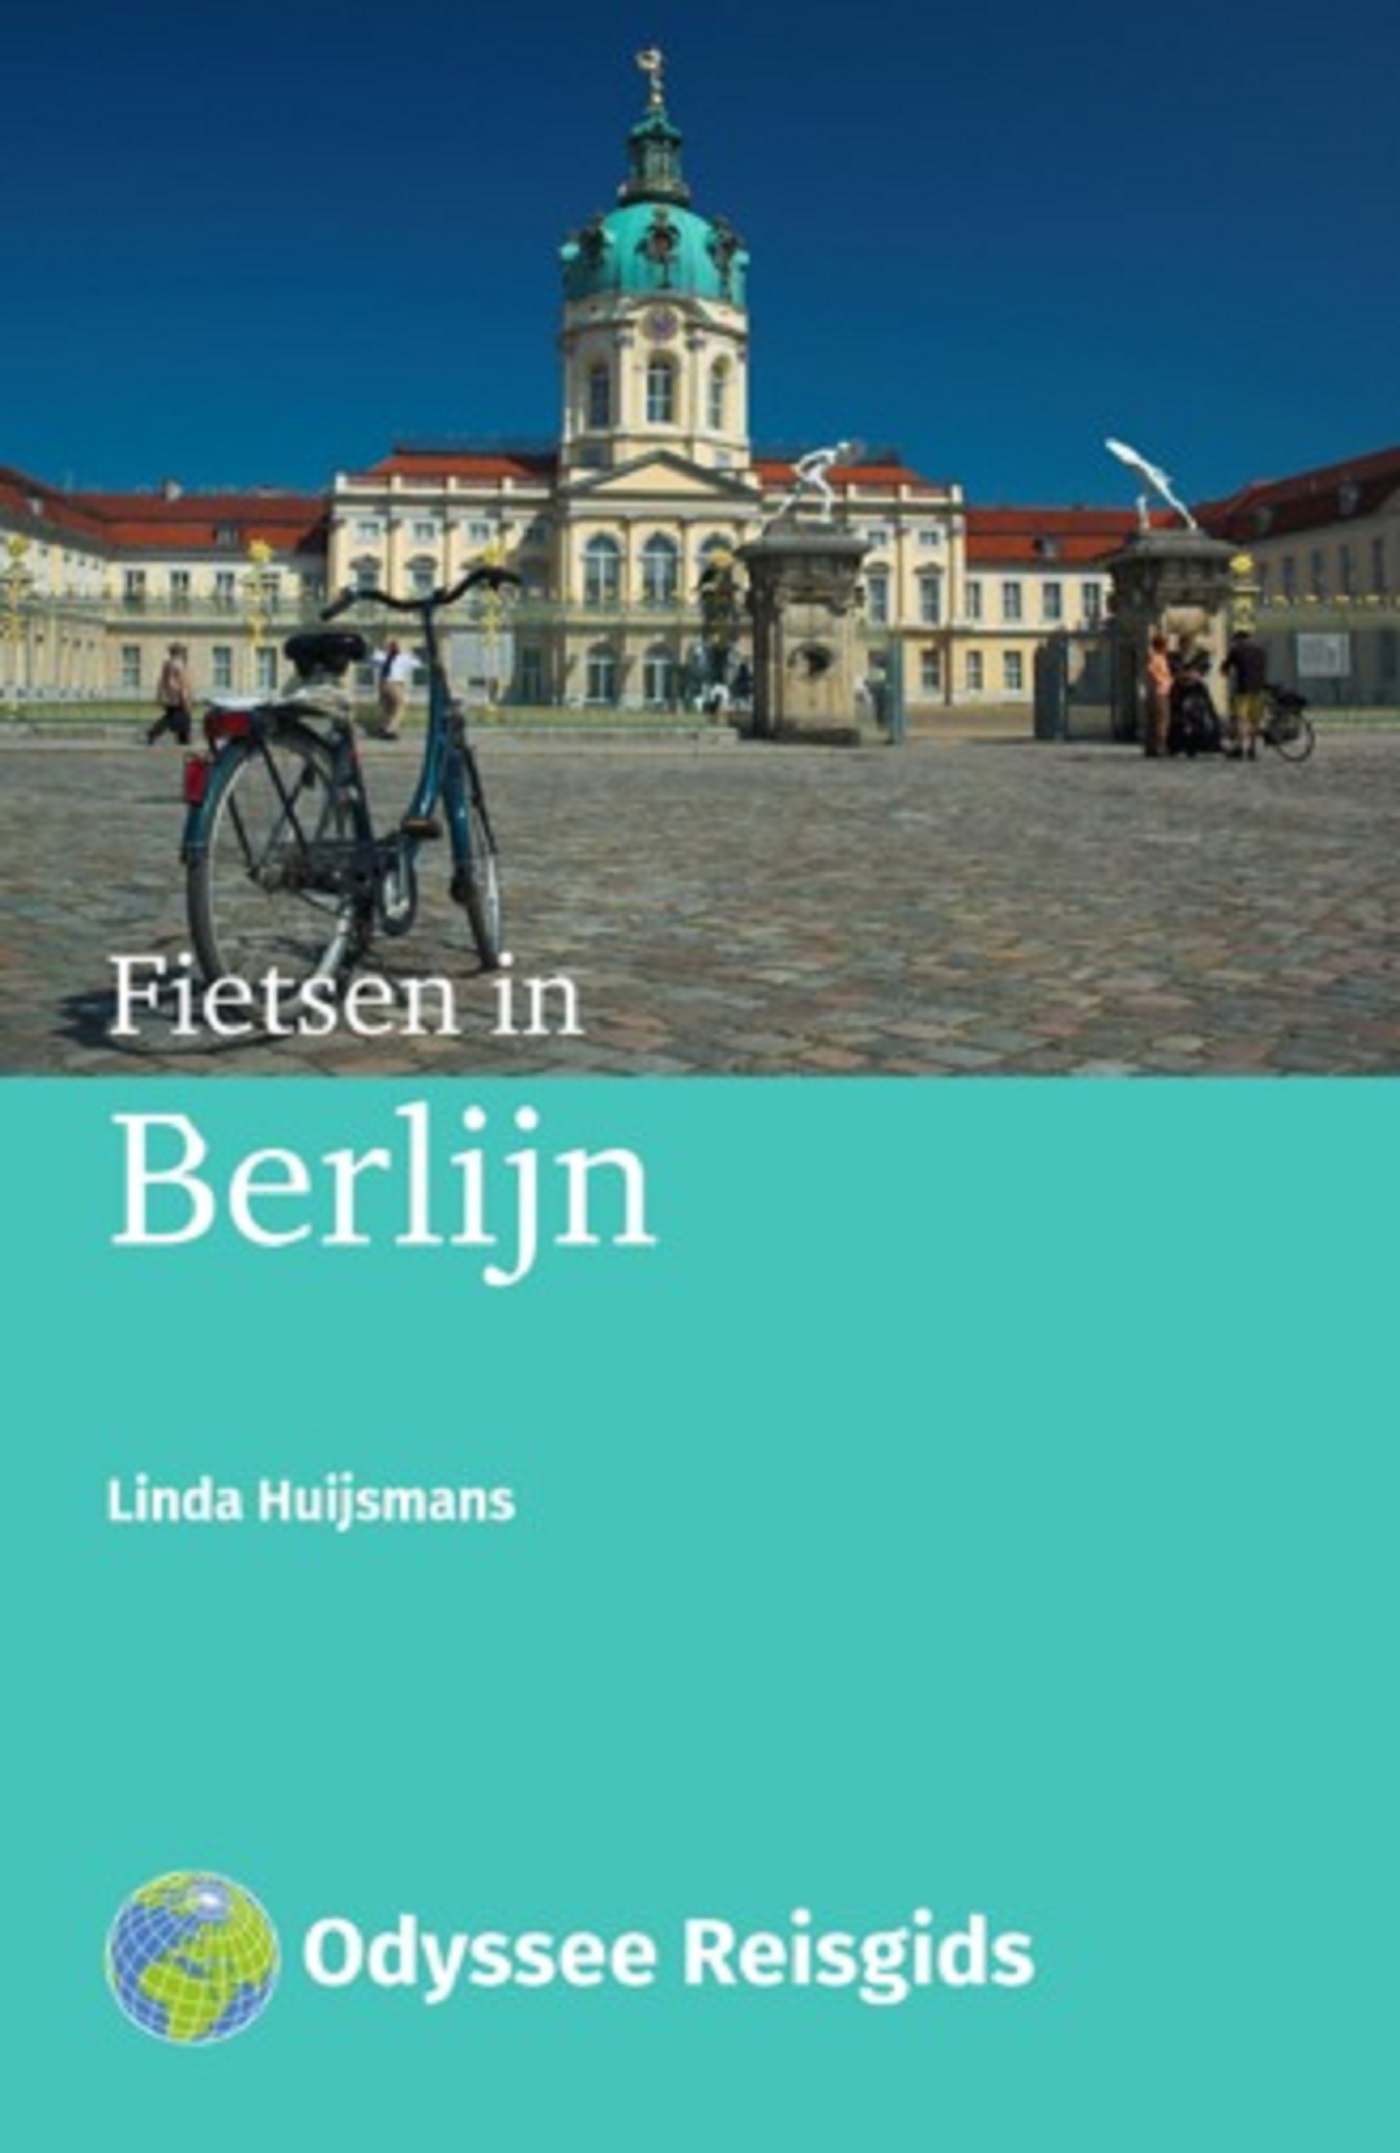 Fietsen in Berlijn (Ebook)